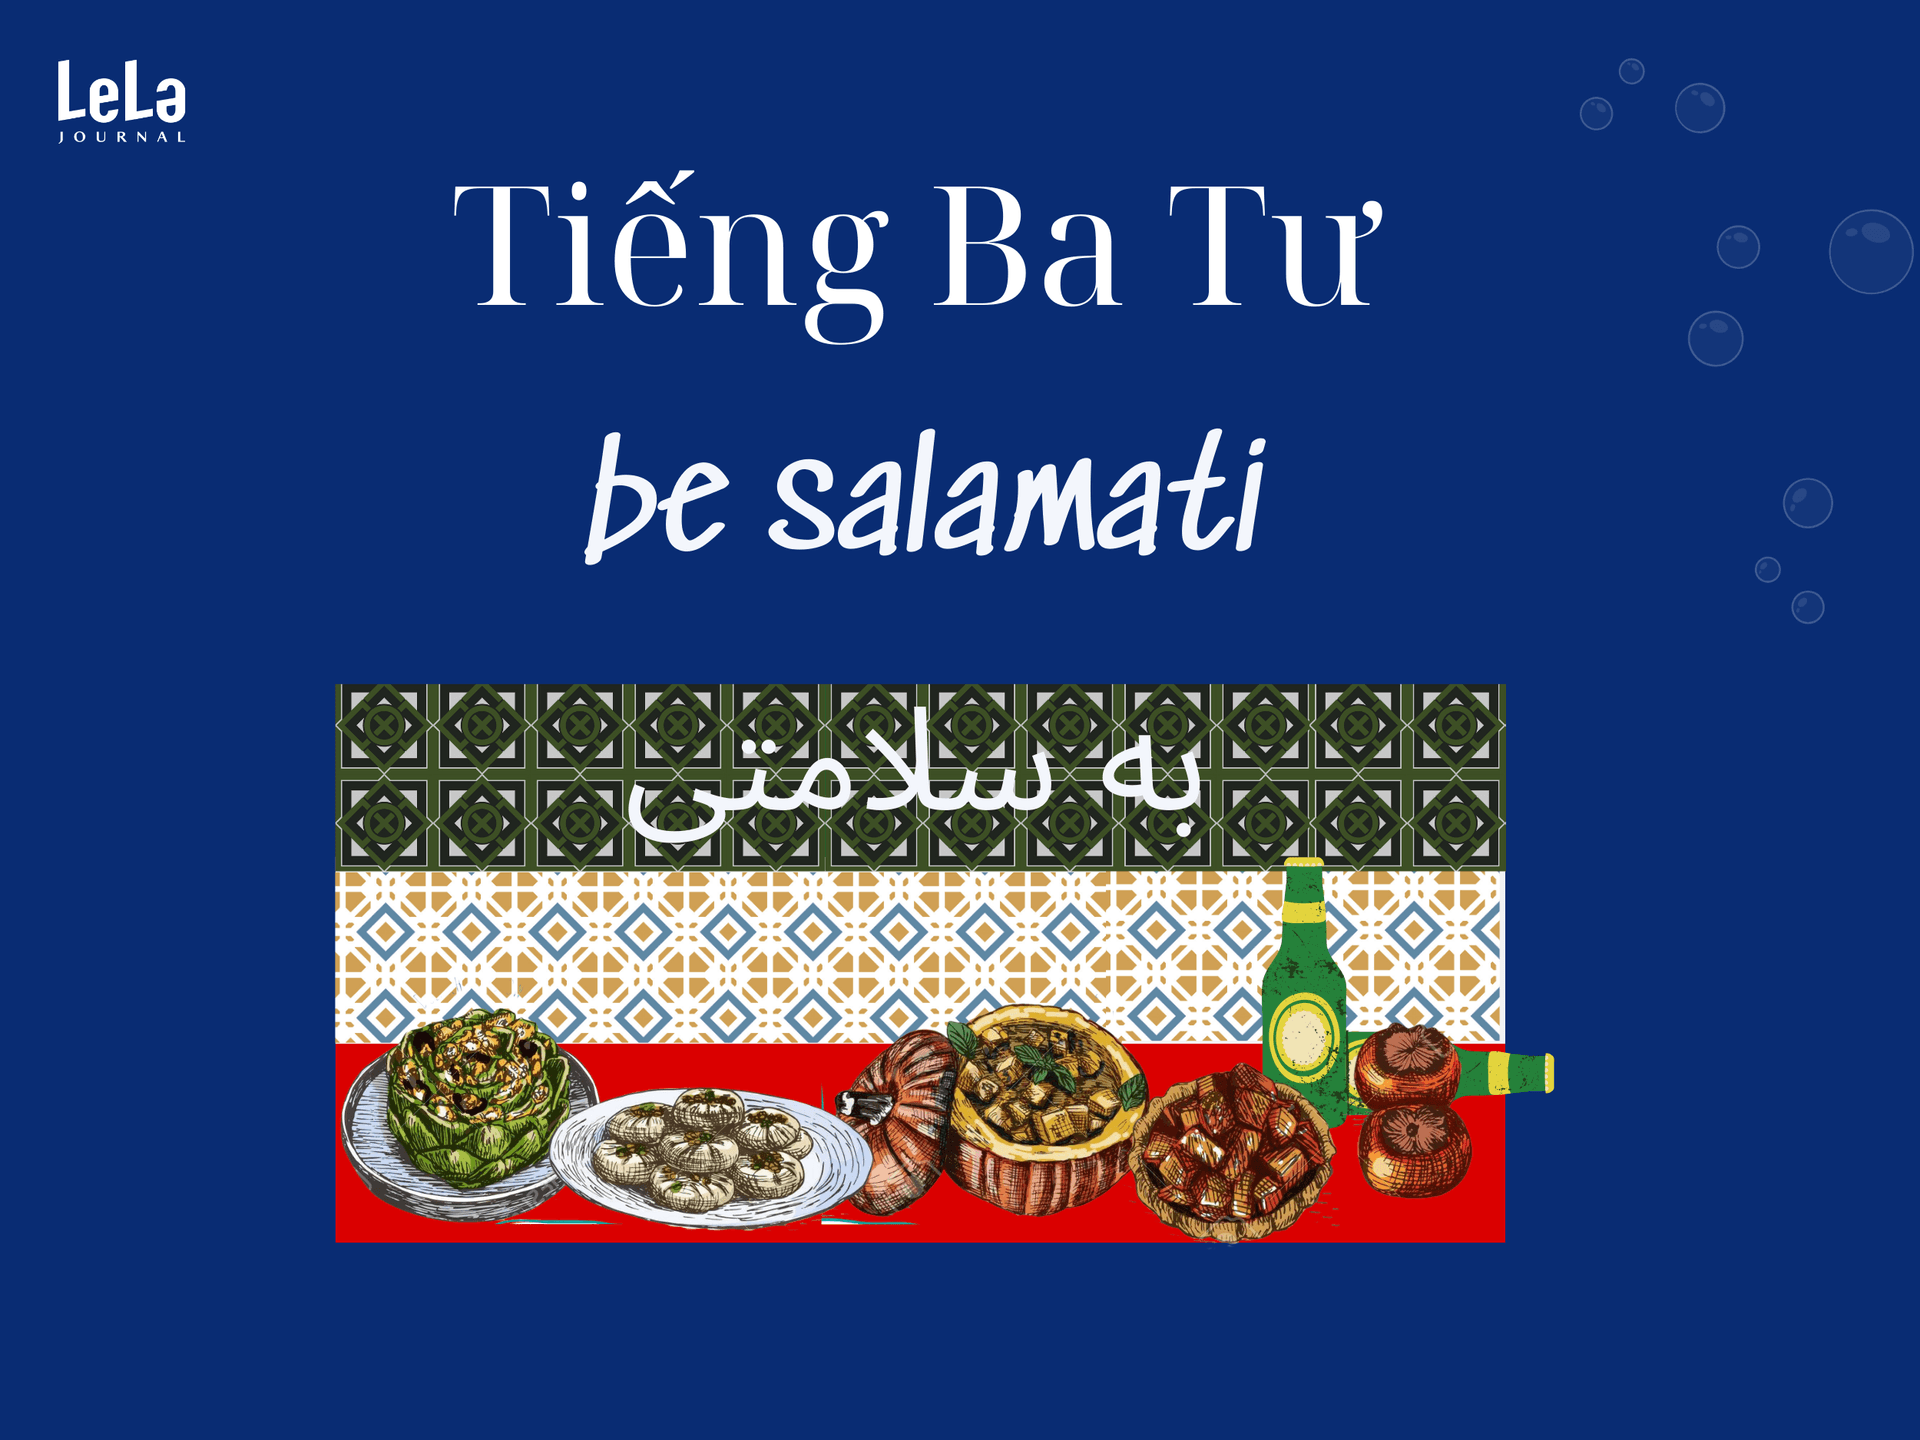 Trong tiếng Ba Tư, câu khẩu hiệu khi cụng ly "be salamati" mang ý nghĩa chúc may mắn